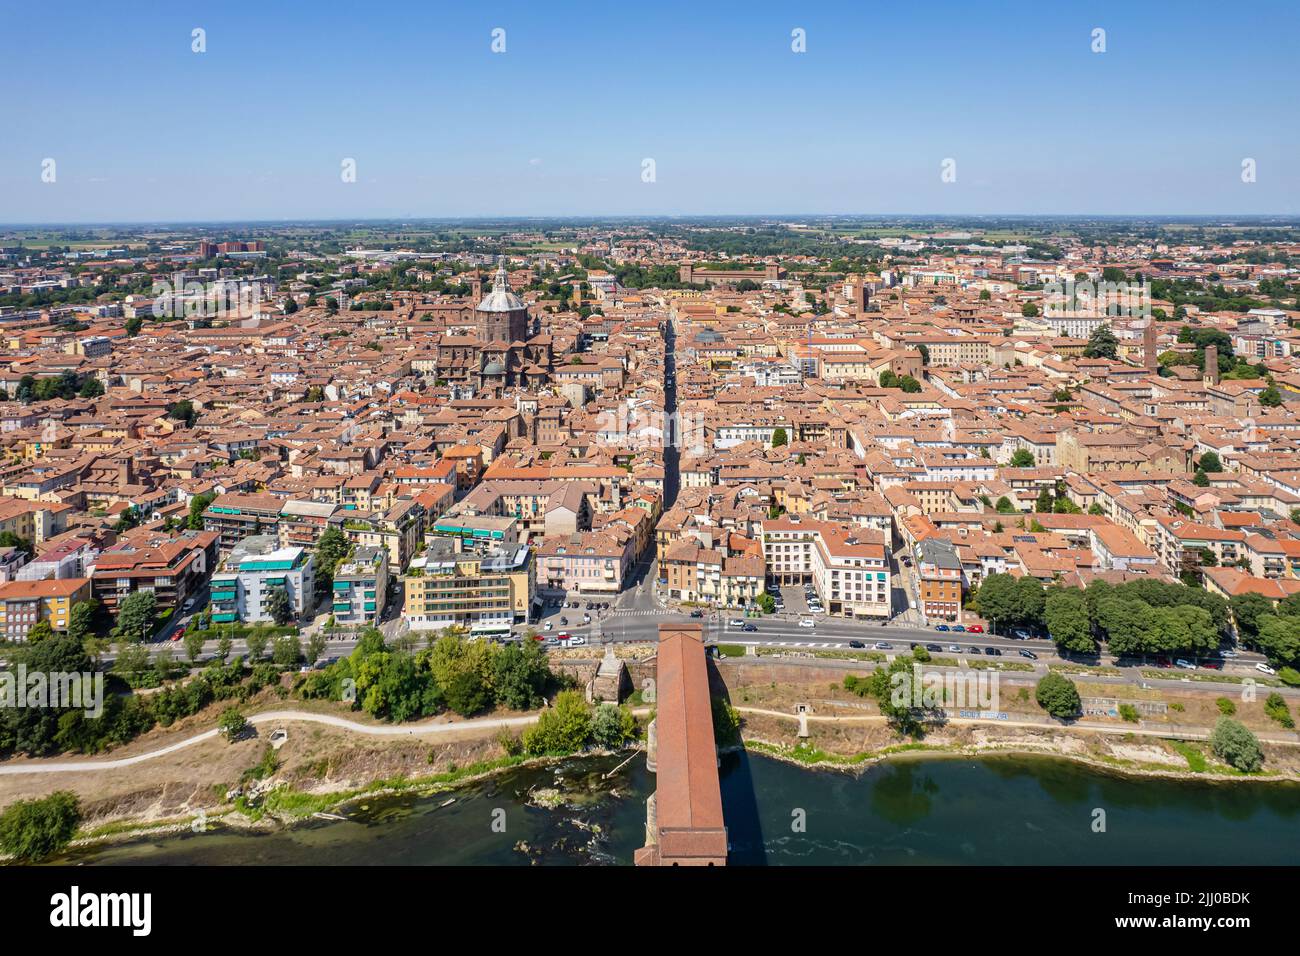 Luftaufnahme von Pavia und dem Tessin, Blick auf die Kathedrale von Pavia, überdachte Brücke. Lombardia, Italien Stockfoto